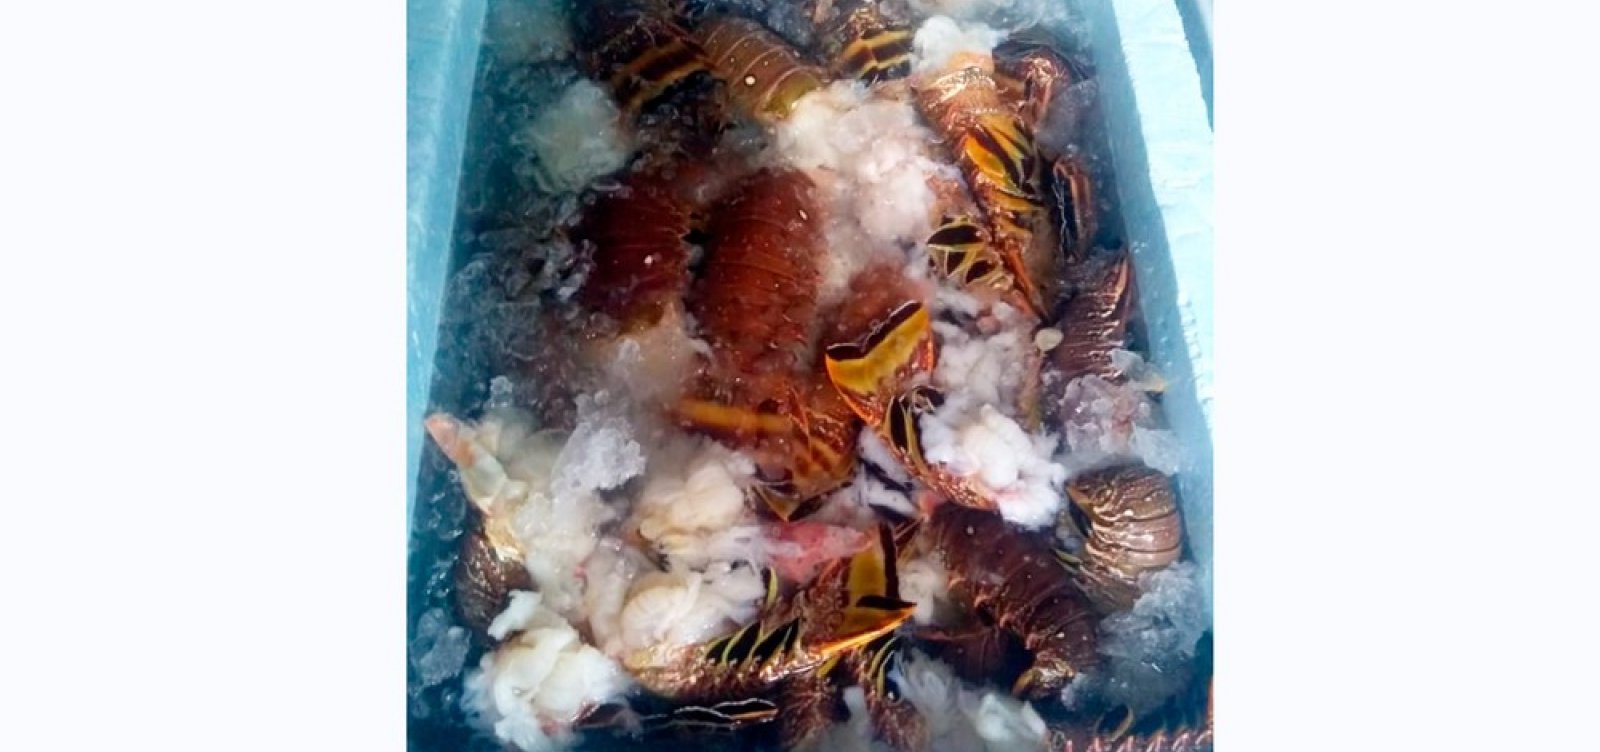 Quase quatro toneladas de lagosta são apreendidas em Alcobaça